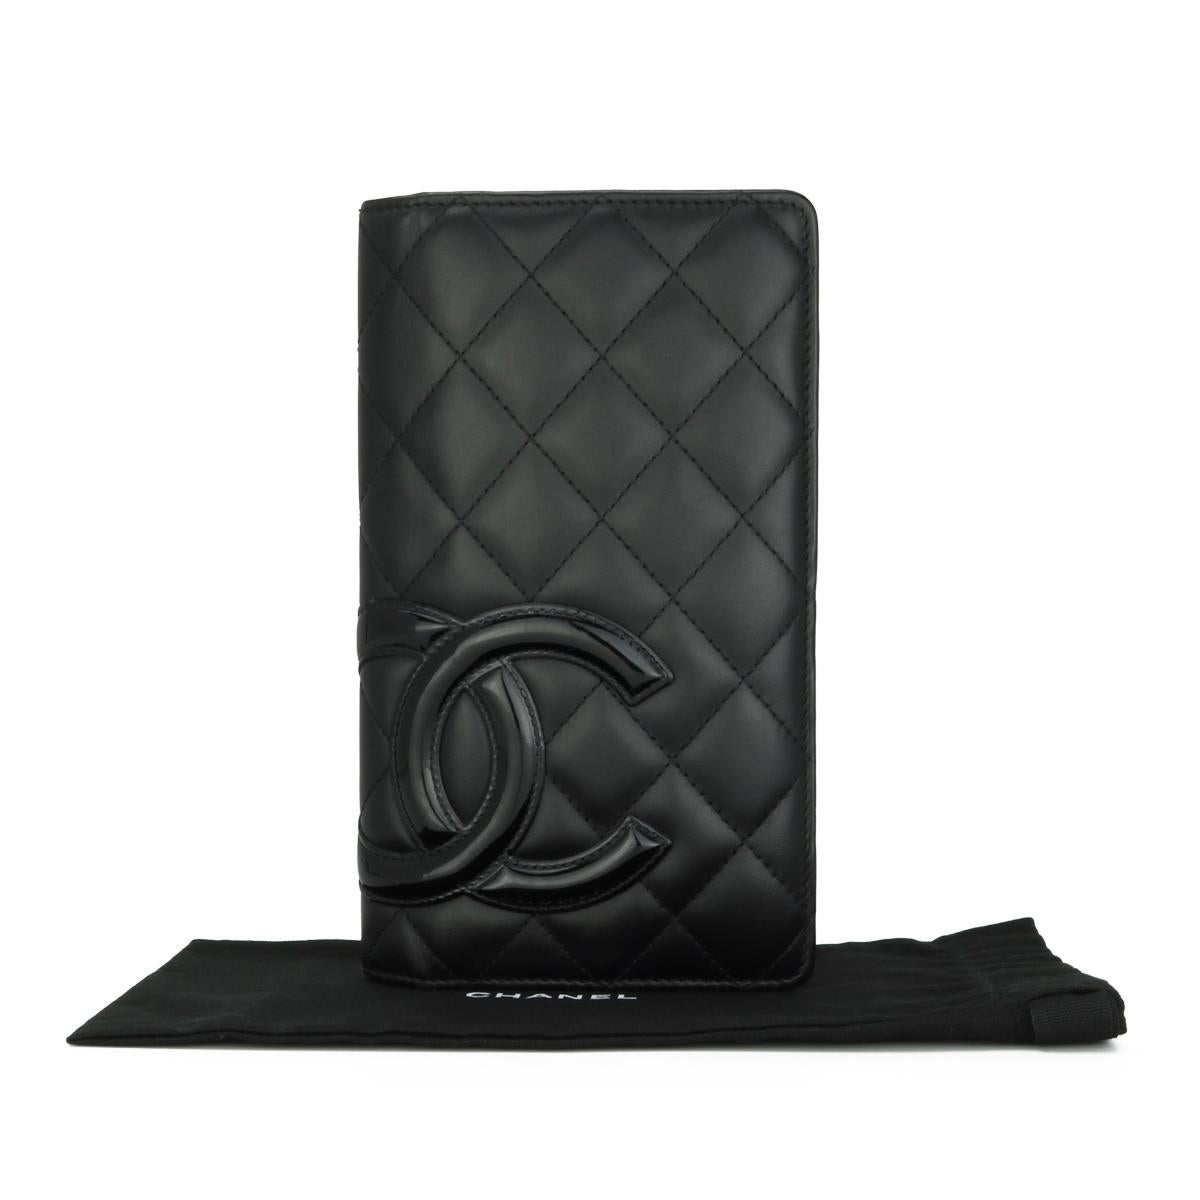 Chanel Quilted Cambon Long Flap Wallet Schwarzes Kalbsleder mit silberner Hardware 2014.

Diese atemberaubende Cambon Brieftasche ist in gutem Zustand, die Brieftasche hat noch ihre ursprüngliche Form und die Hardware ist noch sehr glänzend.

-